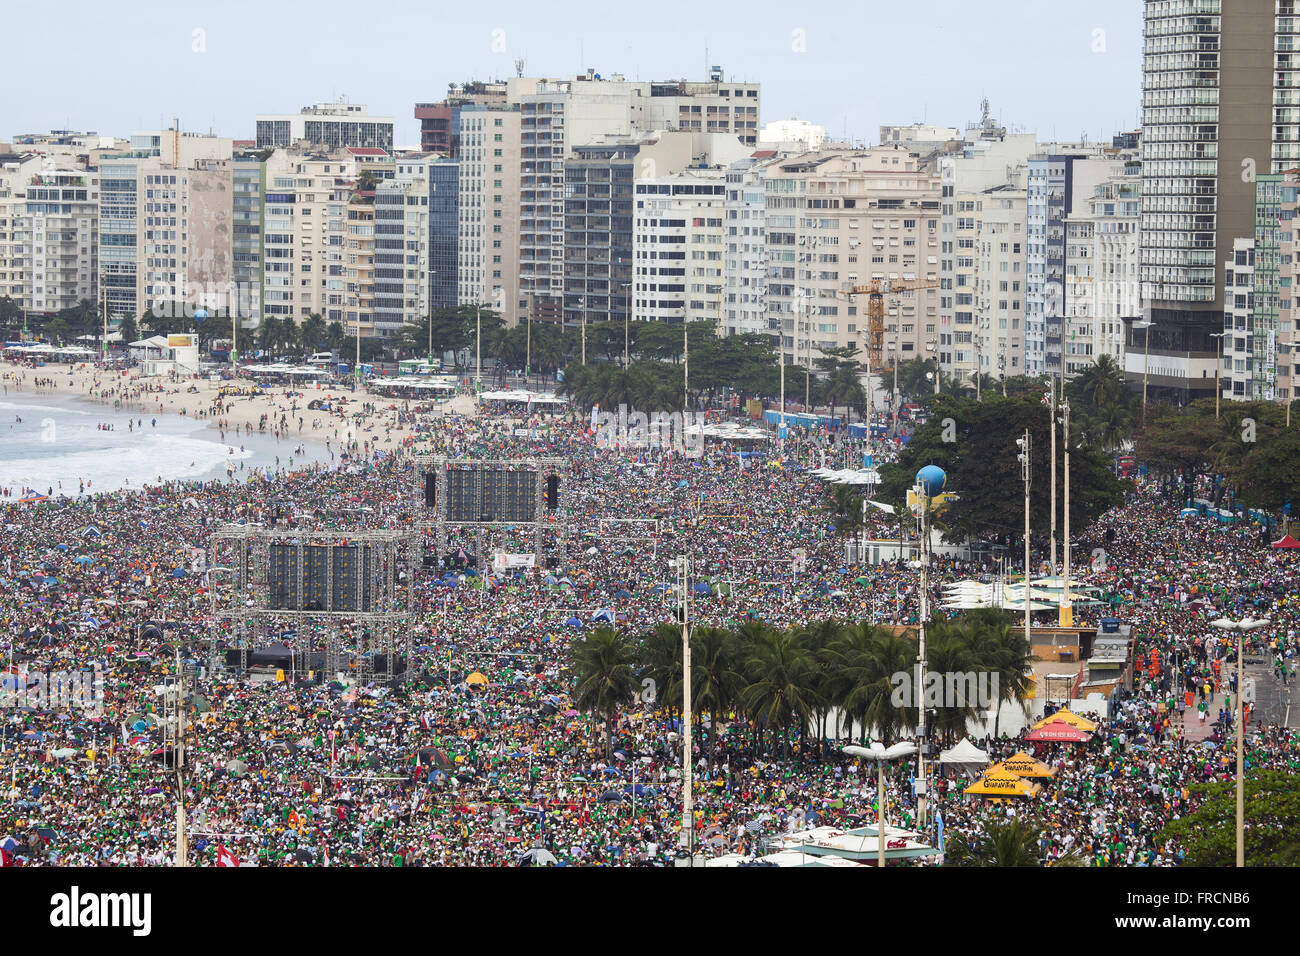 La folla di giovani in occasione della Giornata Mondiale della Gioventù 2013 a Rio sulla spiaggia di Copacabana Foto Stock